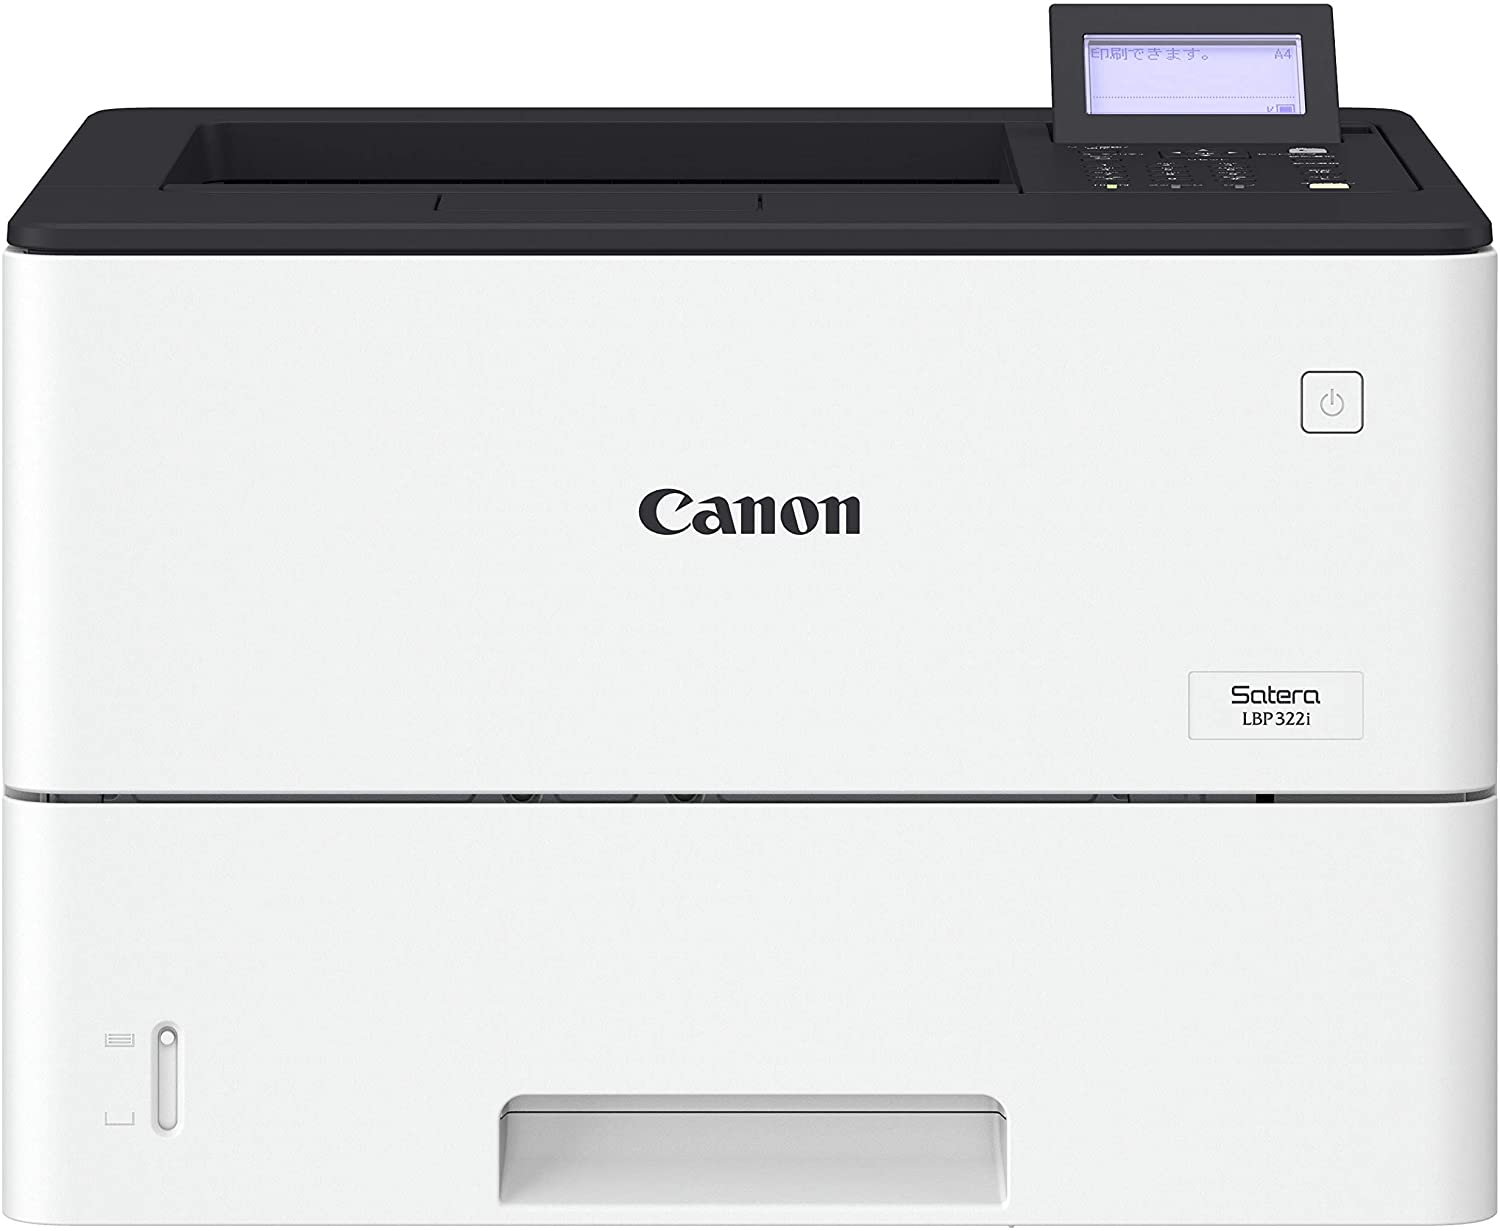 Canon キヤノン A4モノクロレーザープリンター Satera LBP322i｜プリンターの消耗品はトナーマートへ